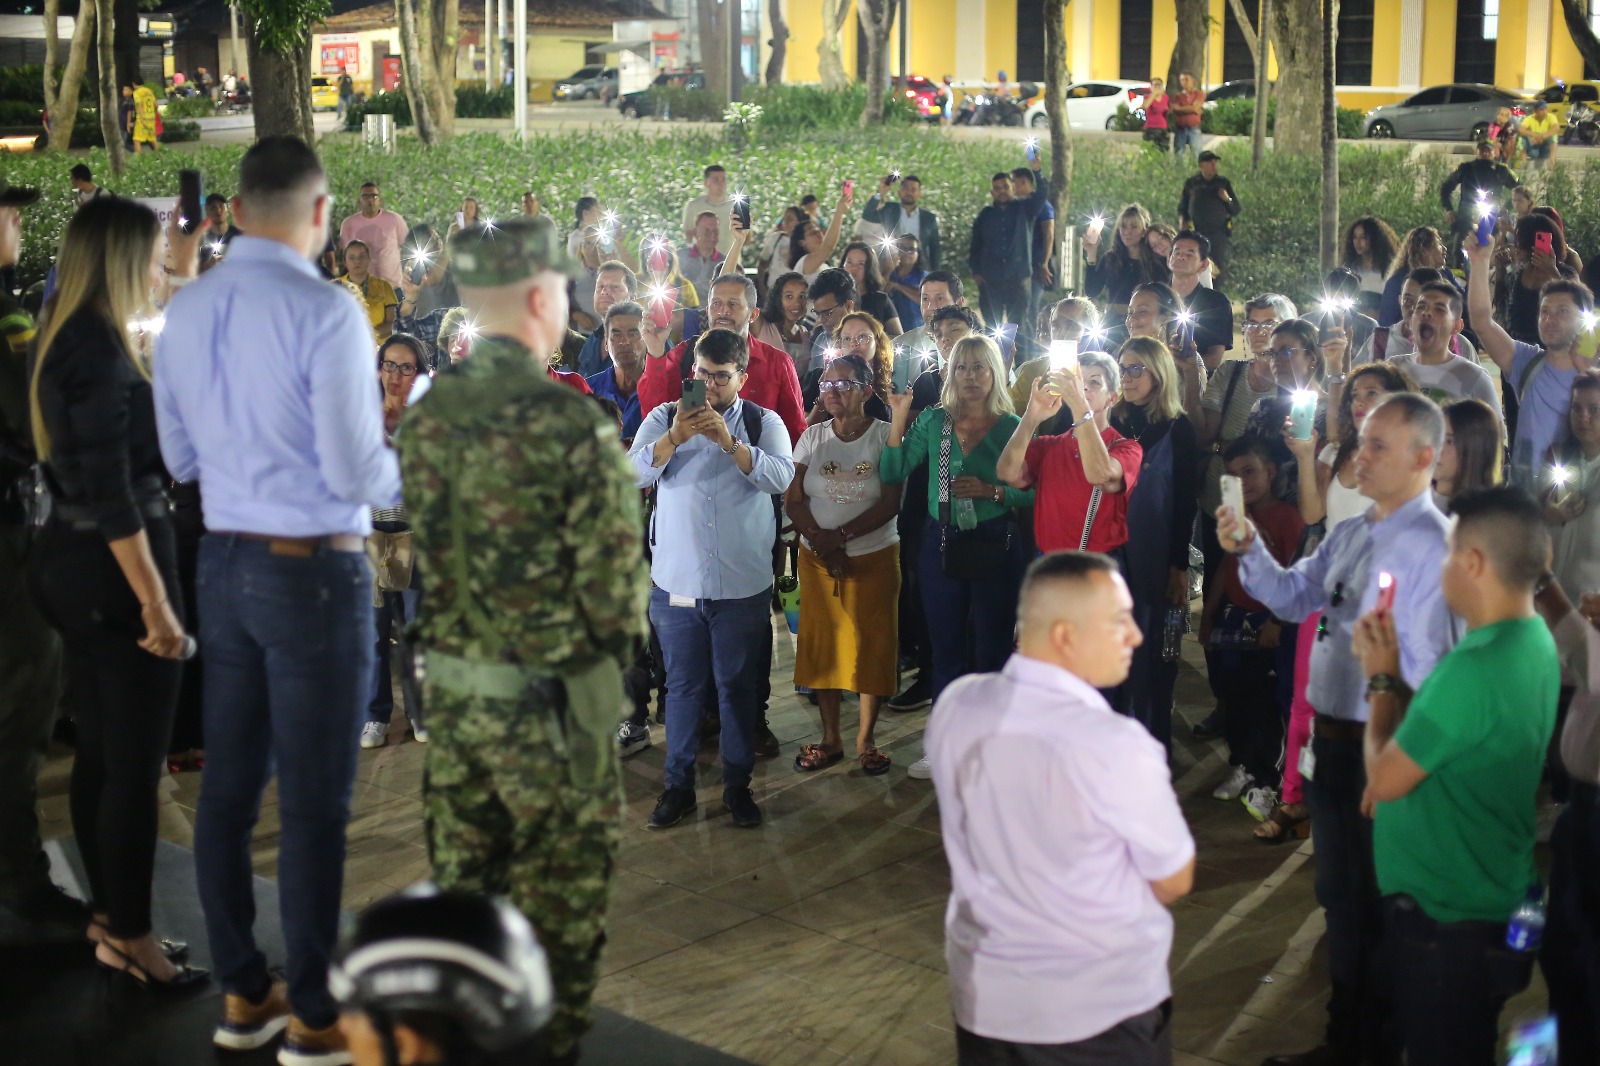 Alcalde de Bucaramanga comparte cena con habitantes de calle en una jornada de reconciliación